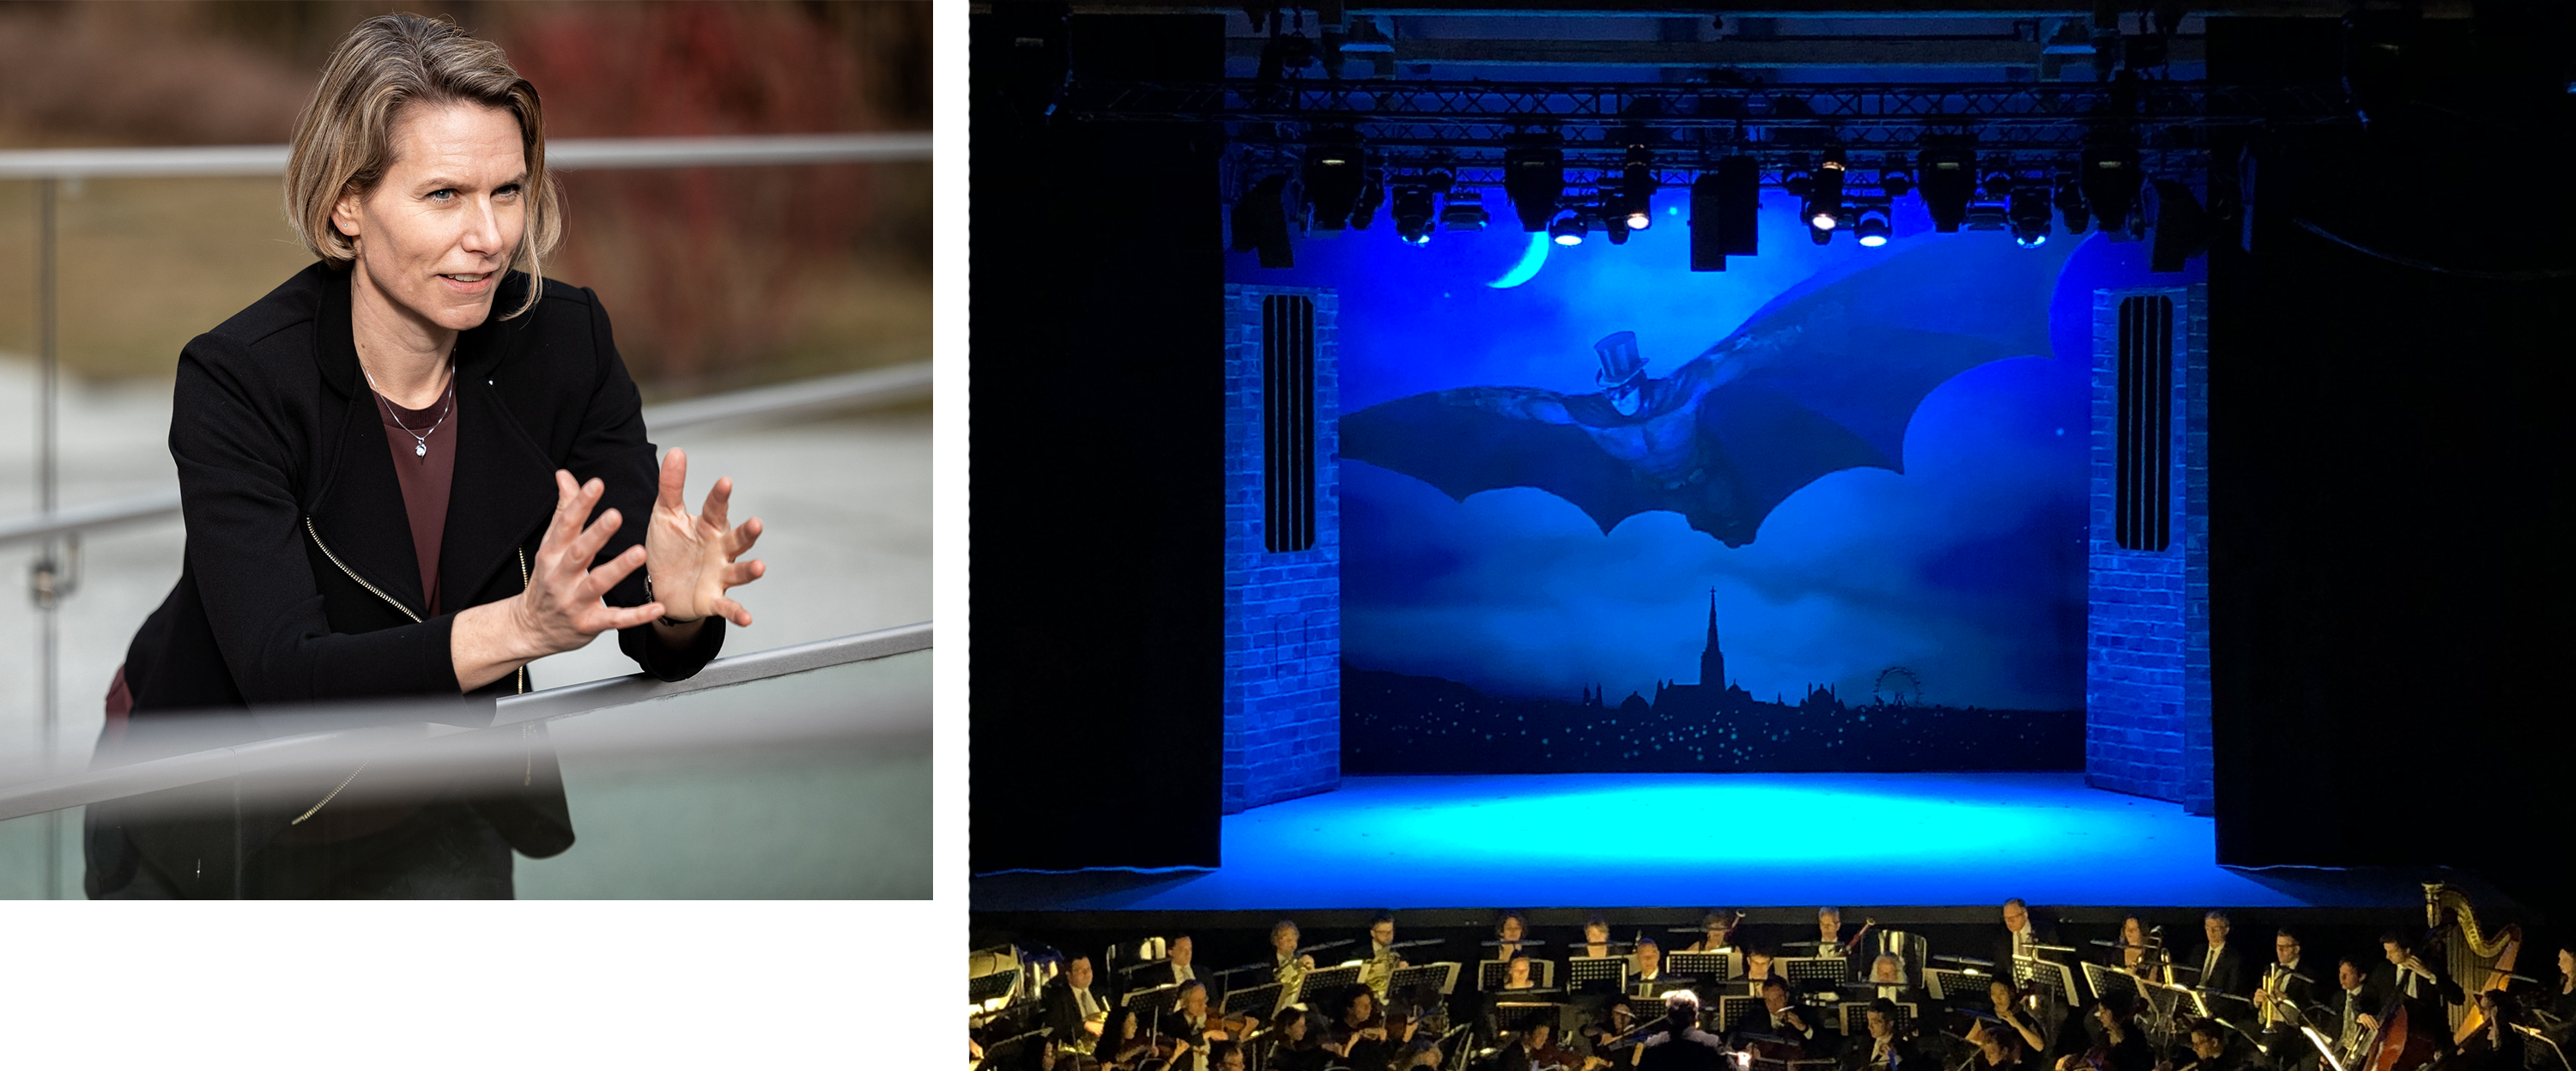 Zur Person | Ab ins Rampenlicht | Sigrid Tschiedl auf einem Klavier & Bregenzer Festspiele